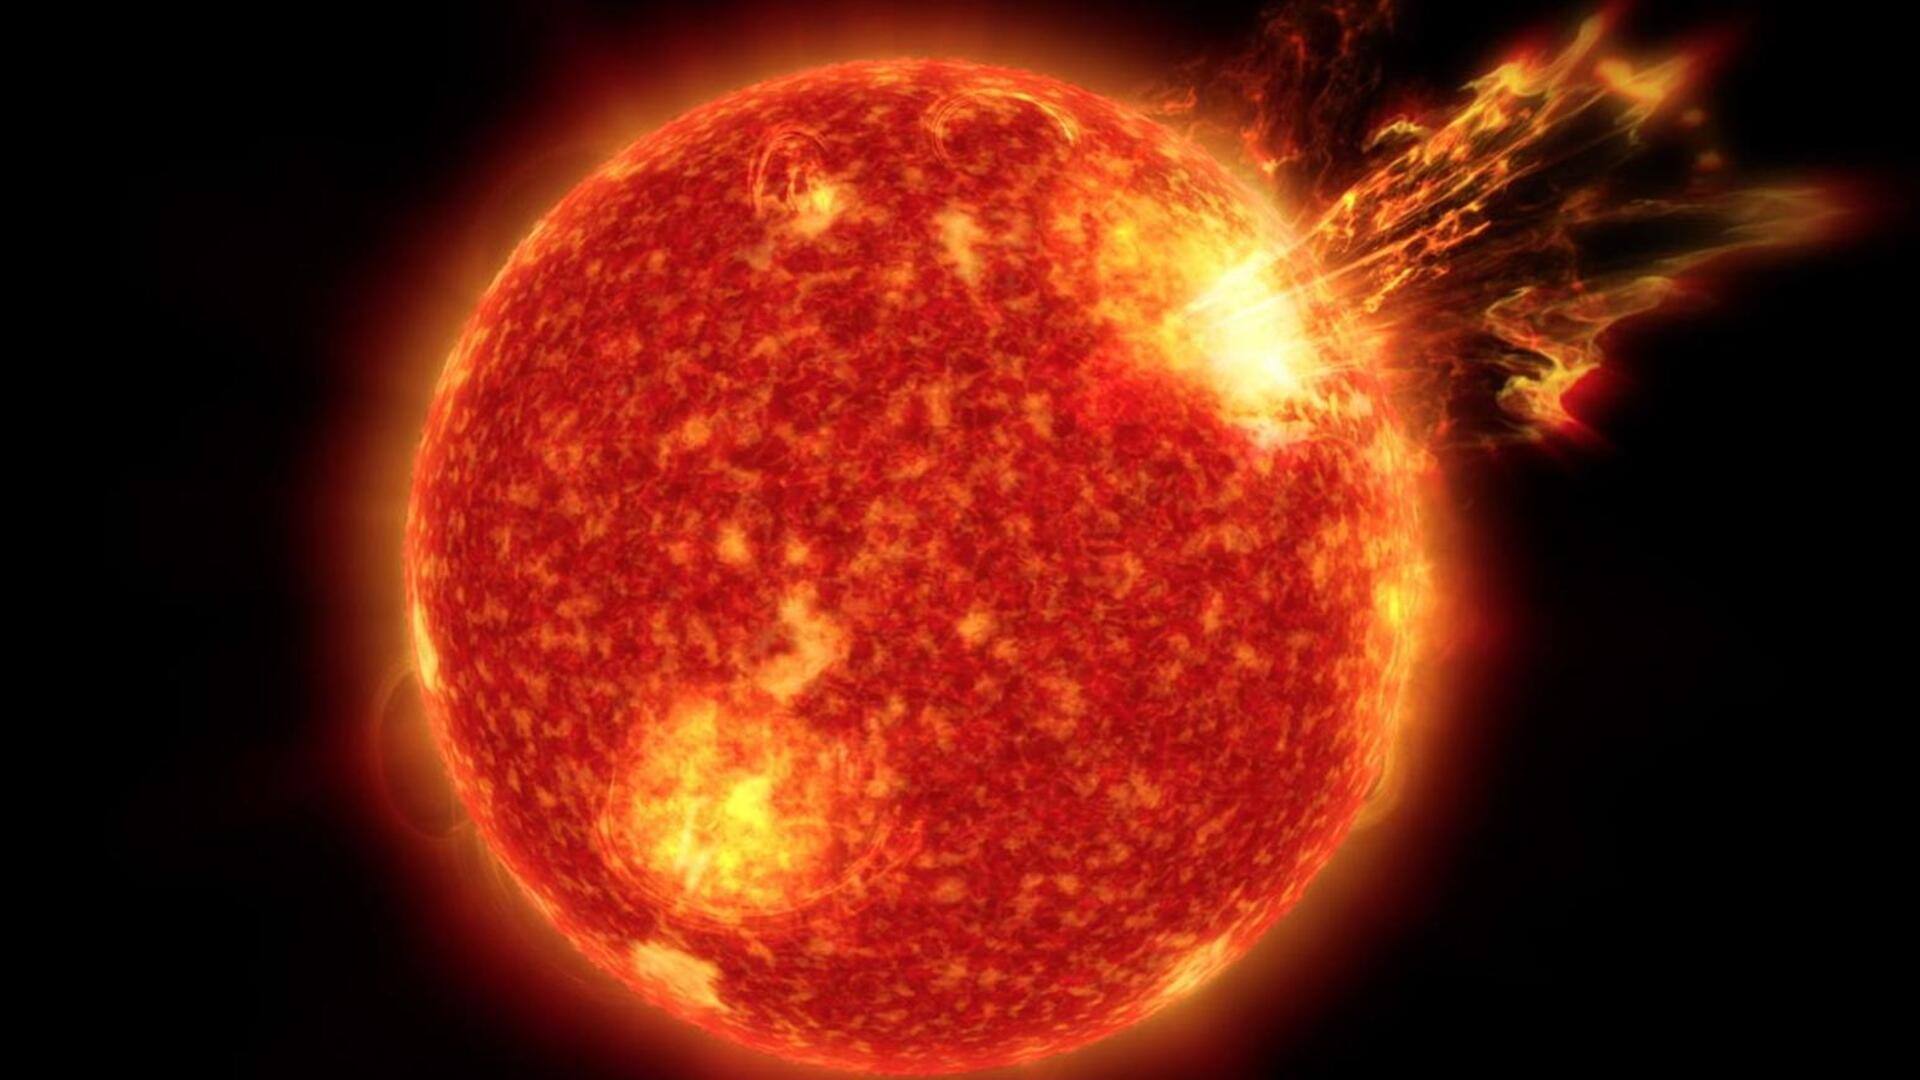 सनस्पॉट AR3425 में हुआ विस्फोट, पृथ्वी से टकरा सकता है शक्तिशाली सोलर फ्लेयर